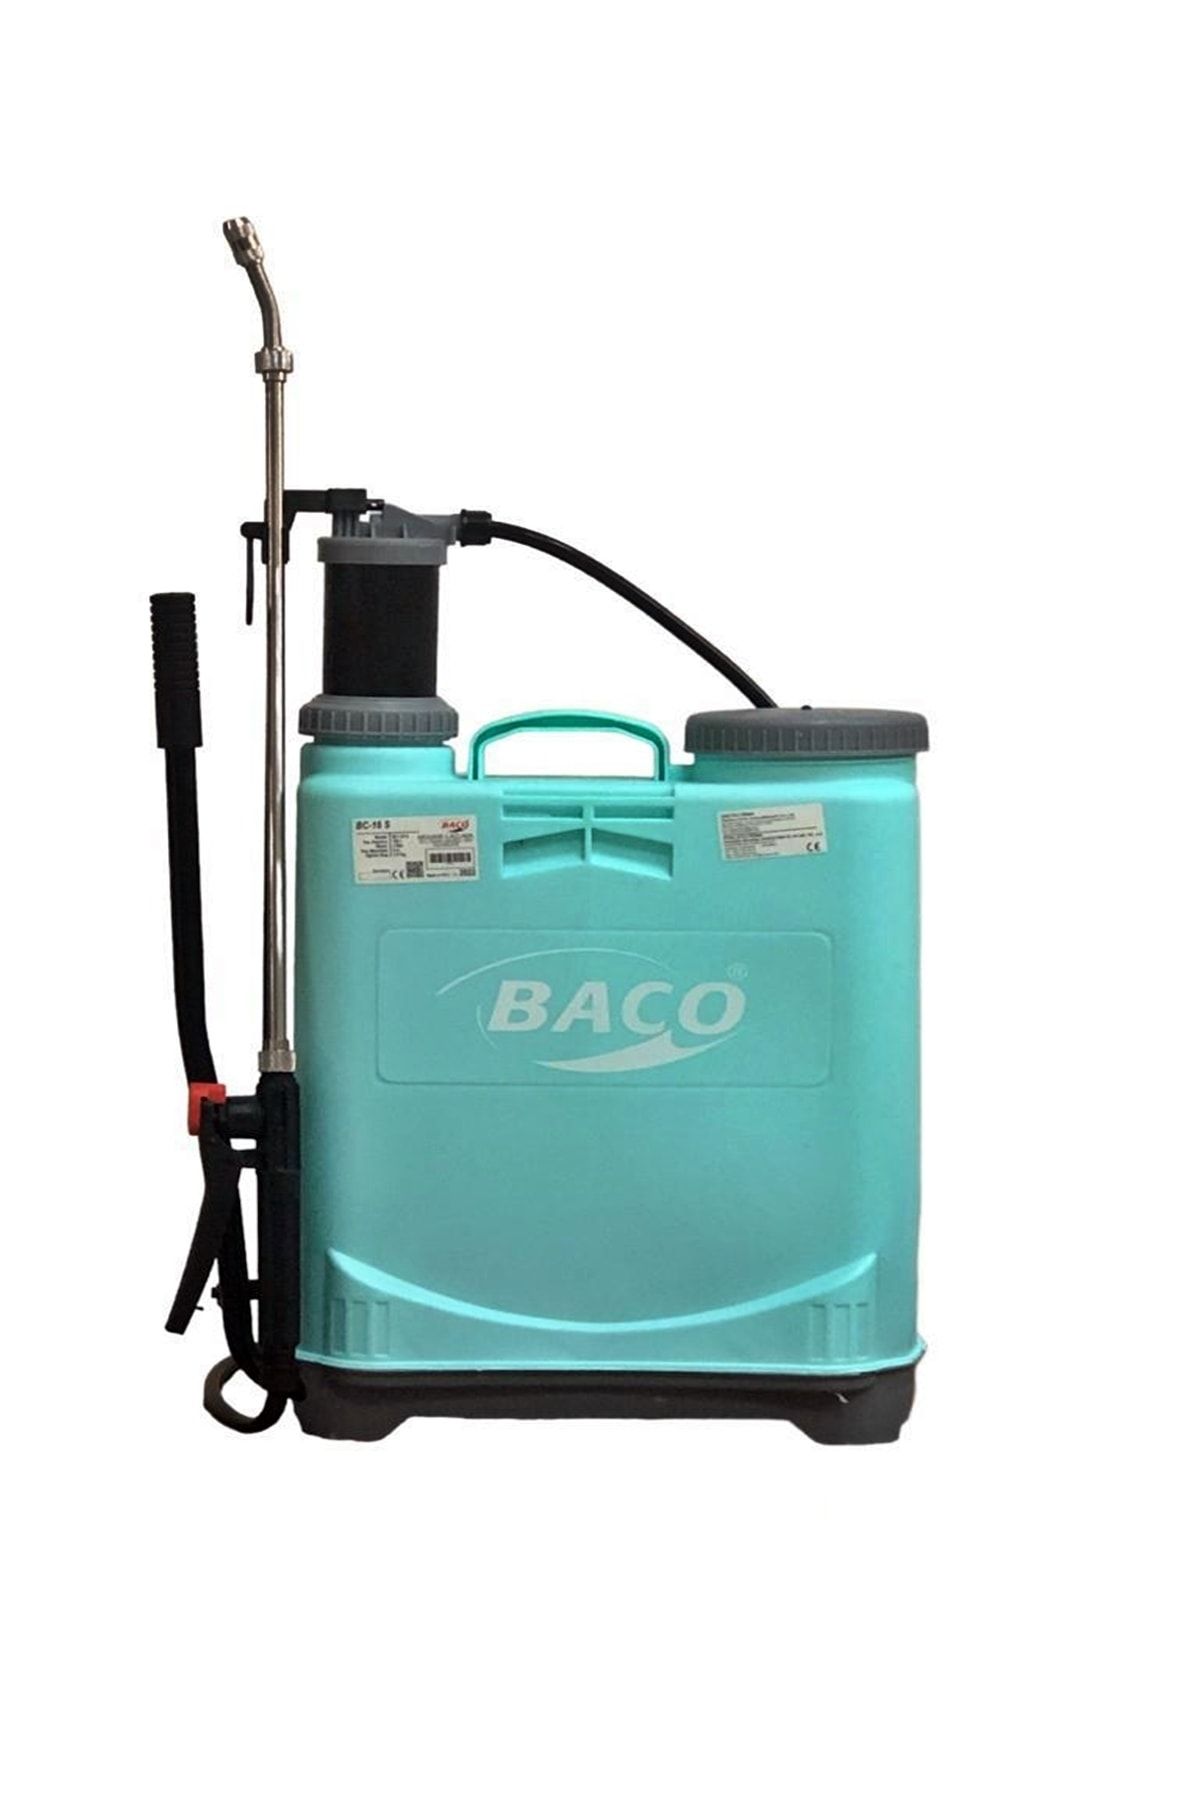 Baco 16 Lt Ilaçlama Makinesi Basınçlı Mekanik Sırt Tipi Ilaçlama Ilaç Pompası Pülverizatör